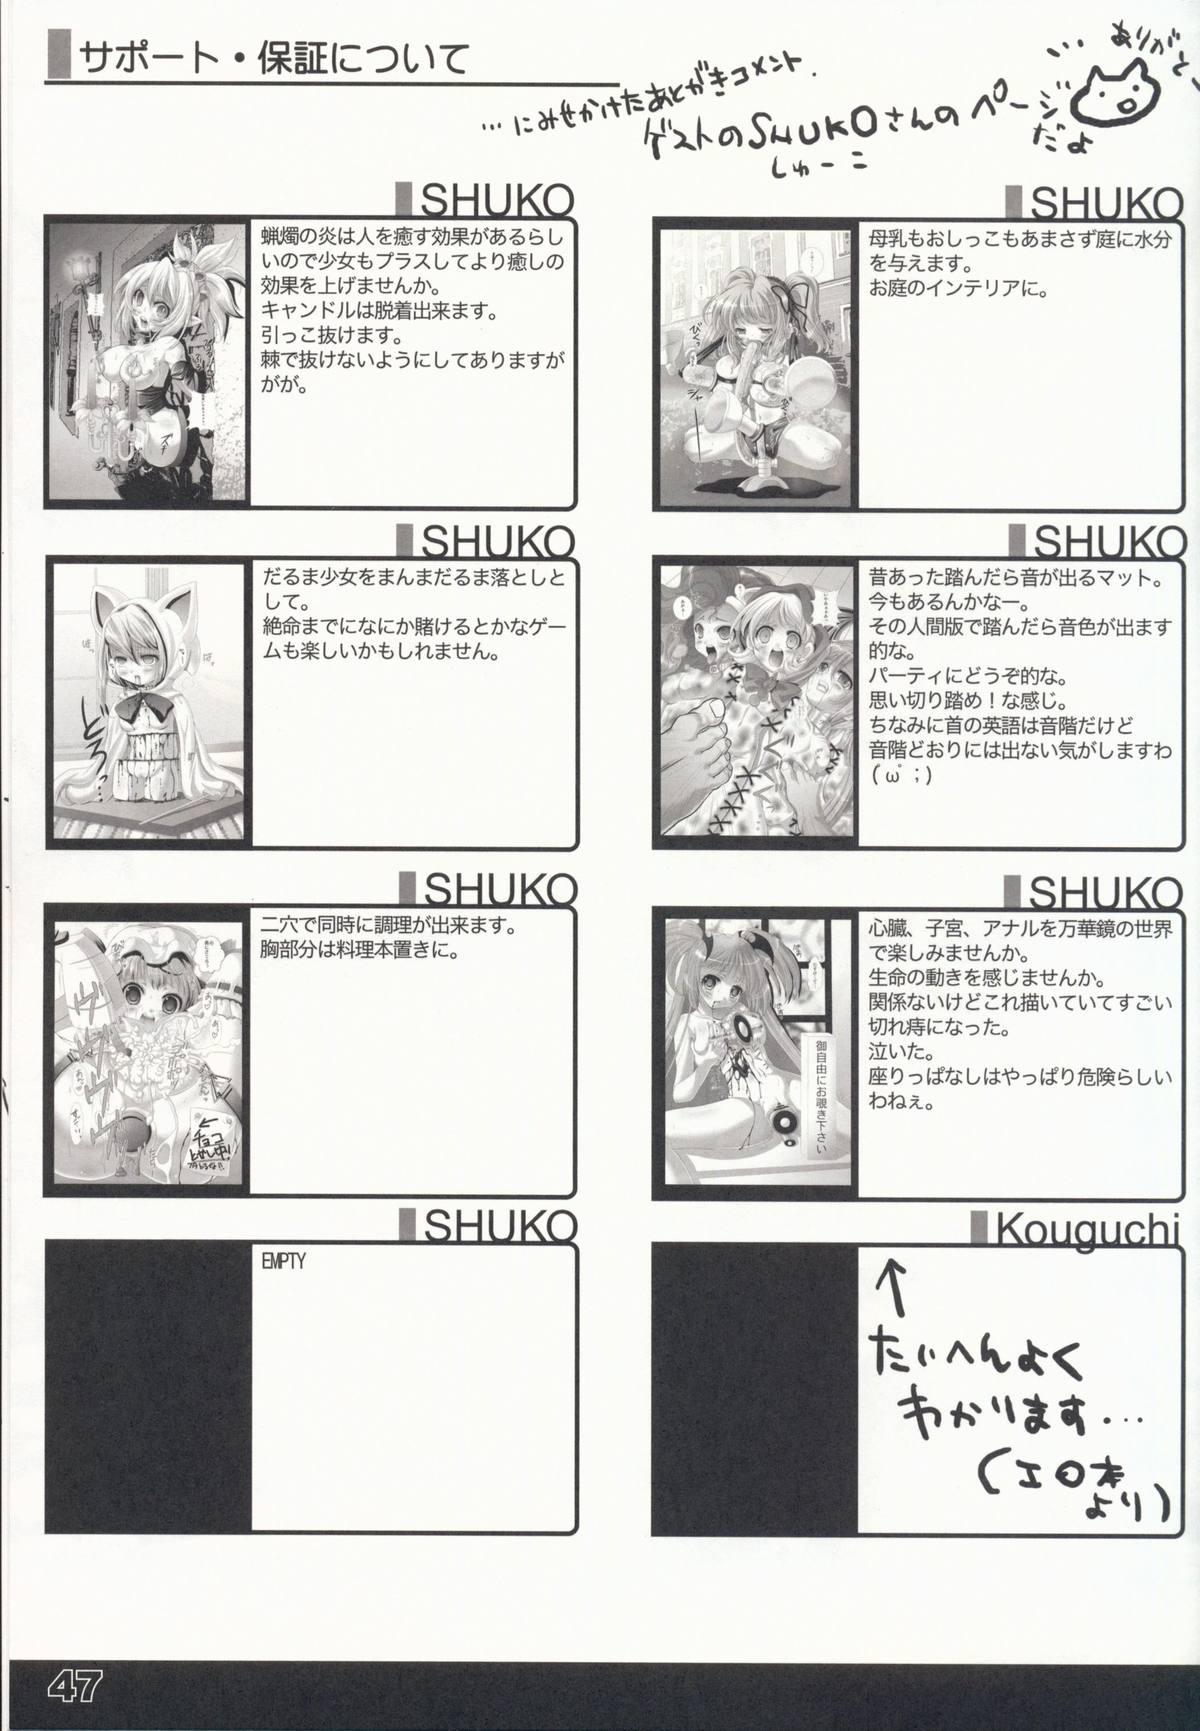 Shoujyo Tsuuhan Catalogue Vol. 2 2007 Winter Collection 48